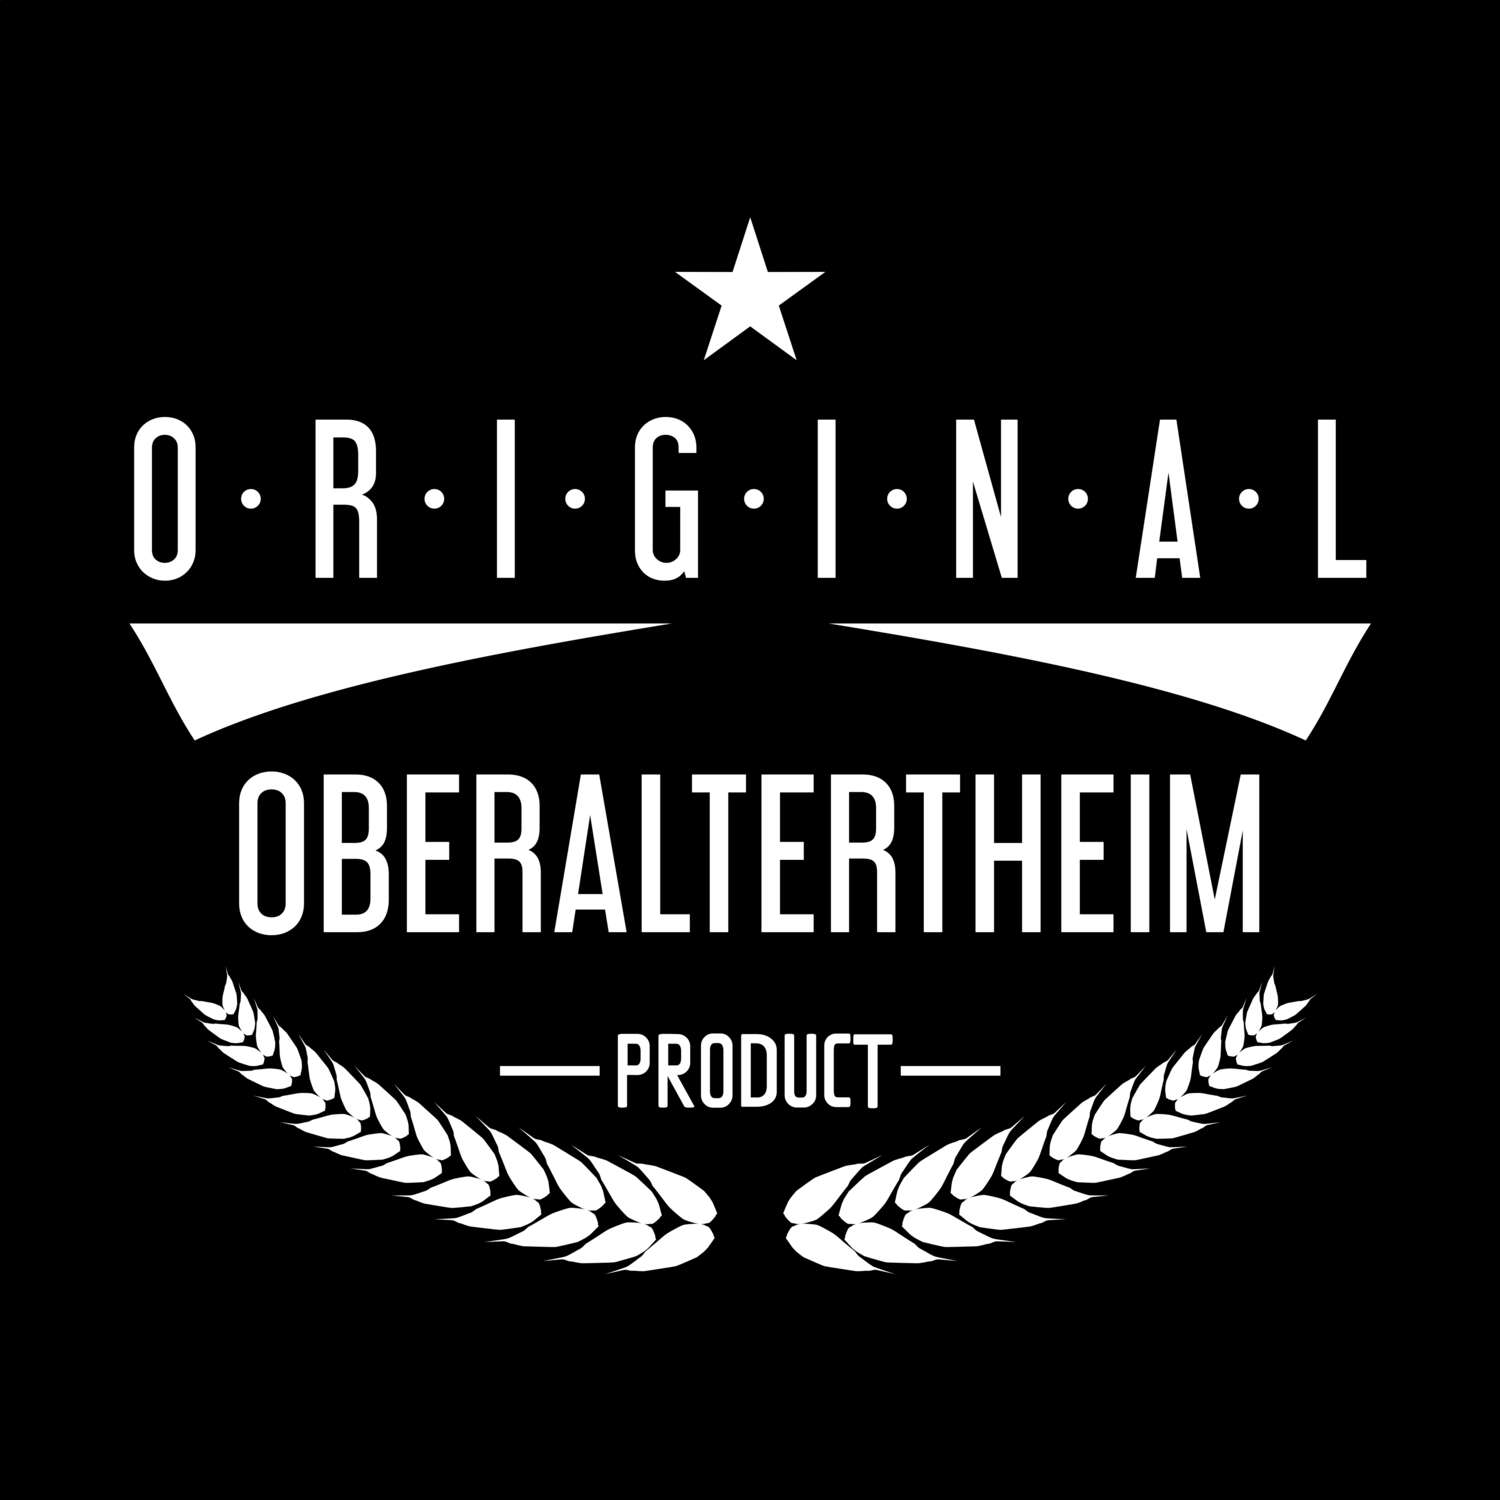 Oberaltertheim T-Shirt »Original Product«